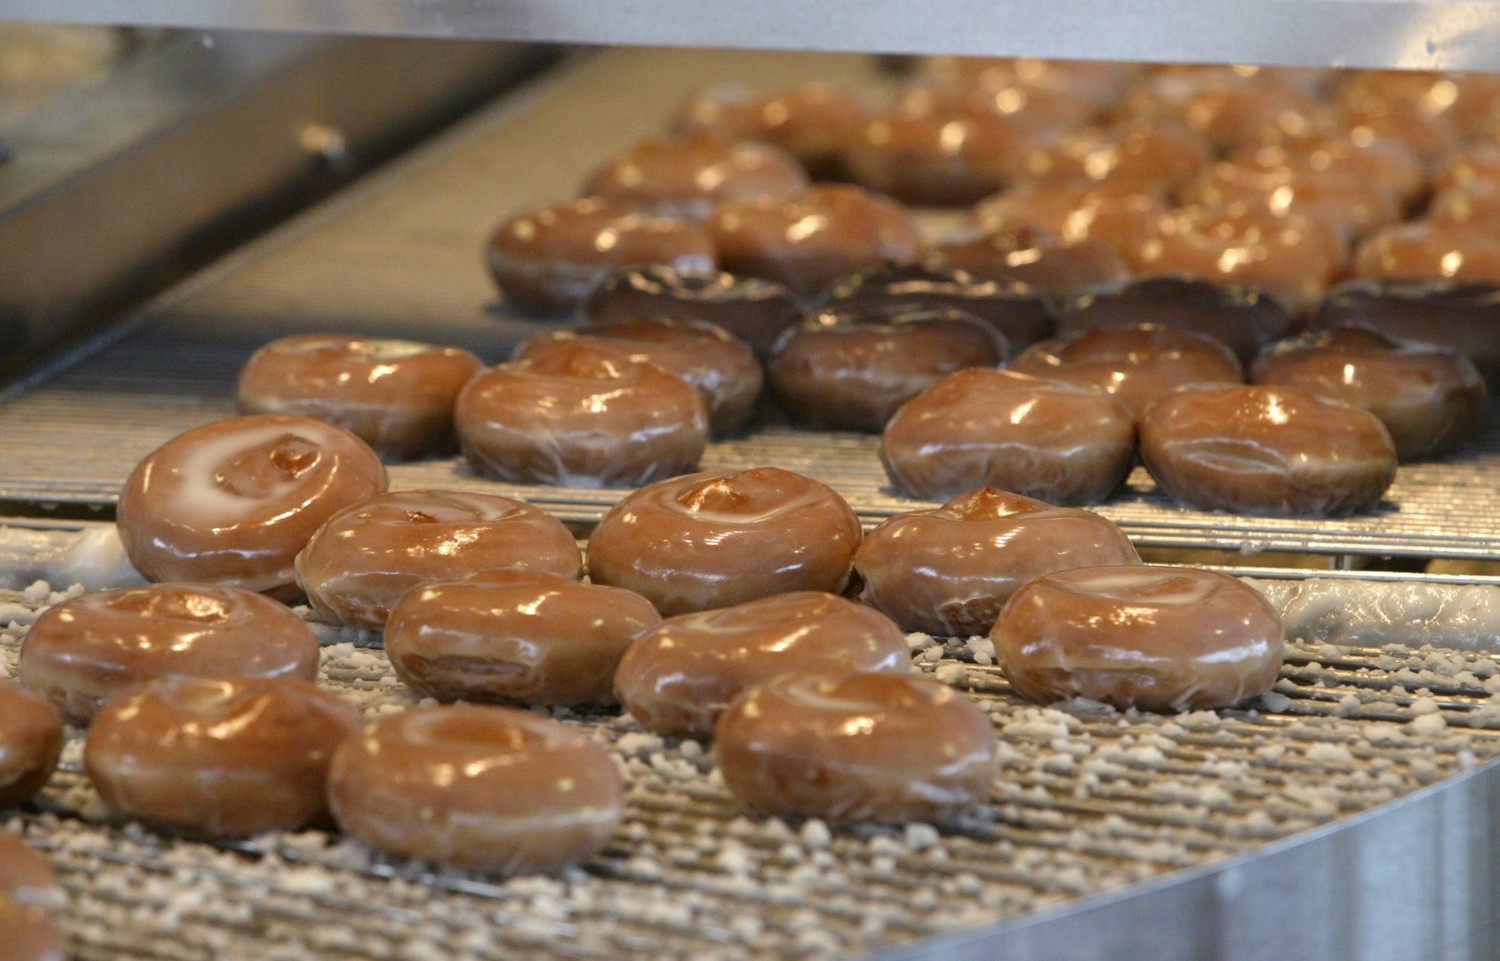 Krispy Kreme photo